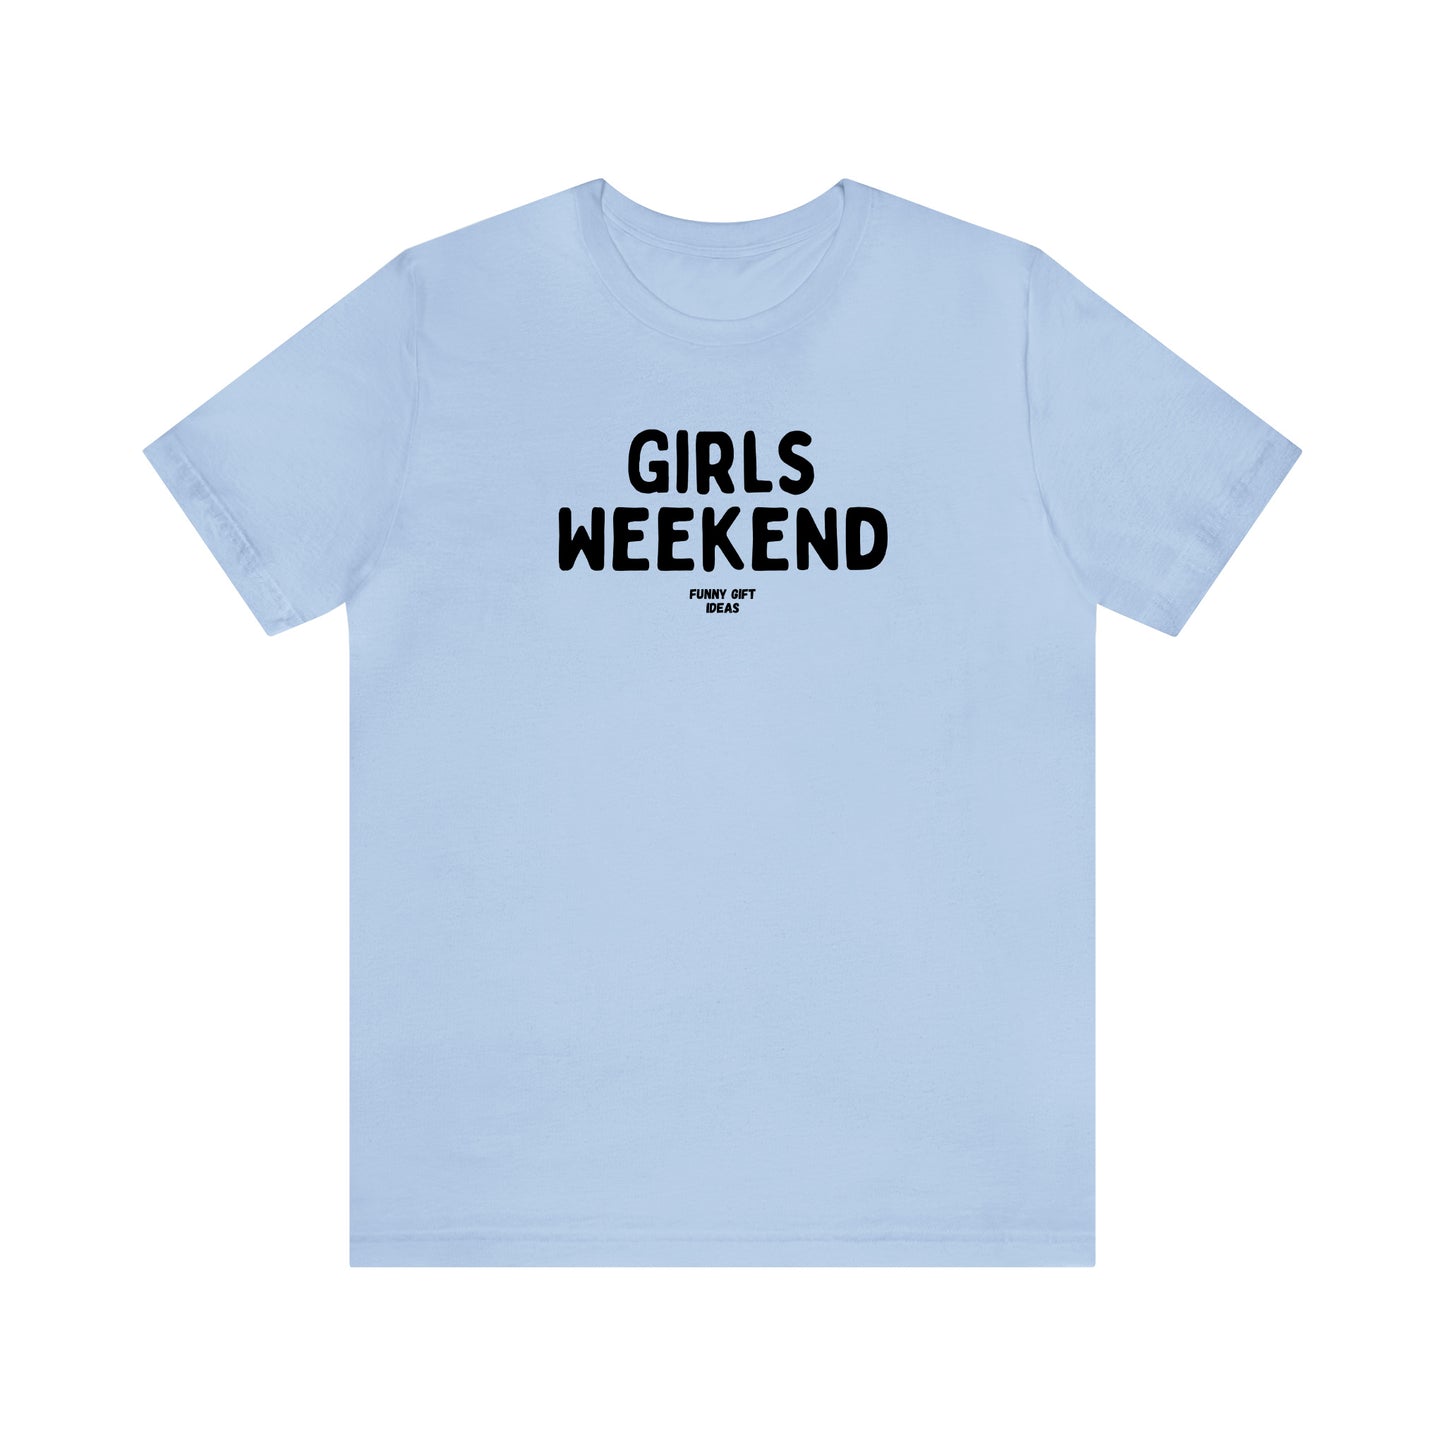 Funny Shirts for Women - Girls Weekend - Women's T Shirts